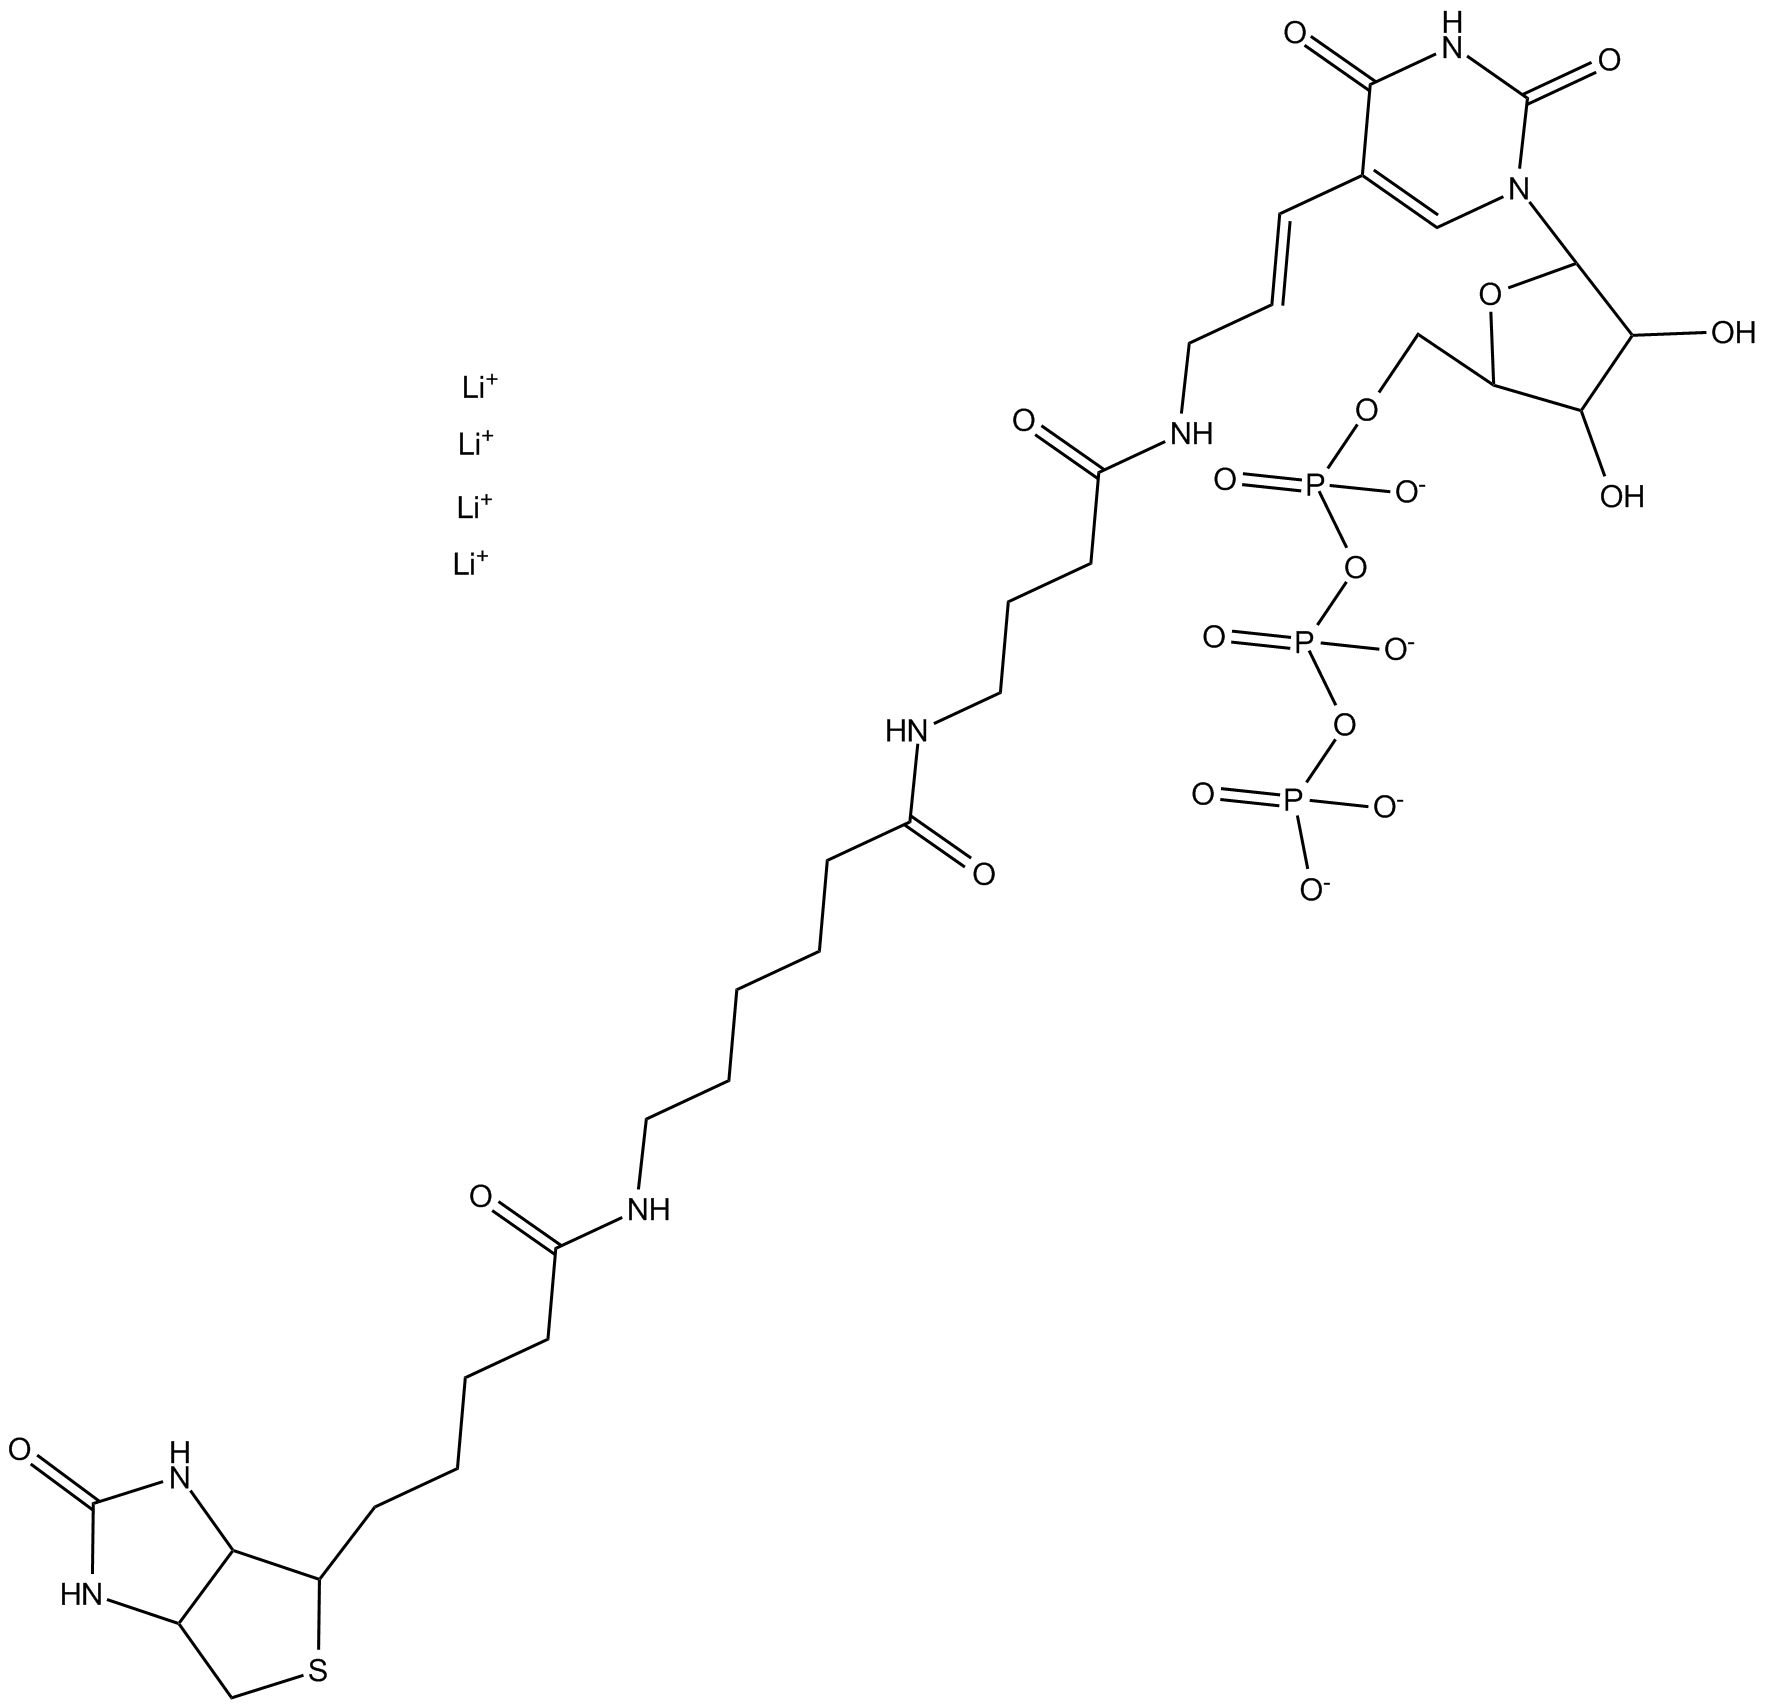 Biotin-UTP